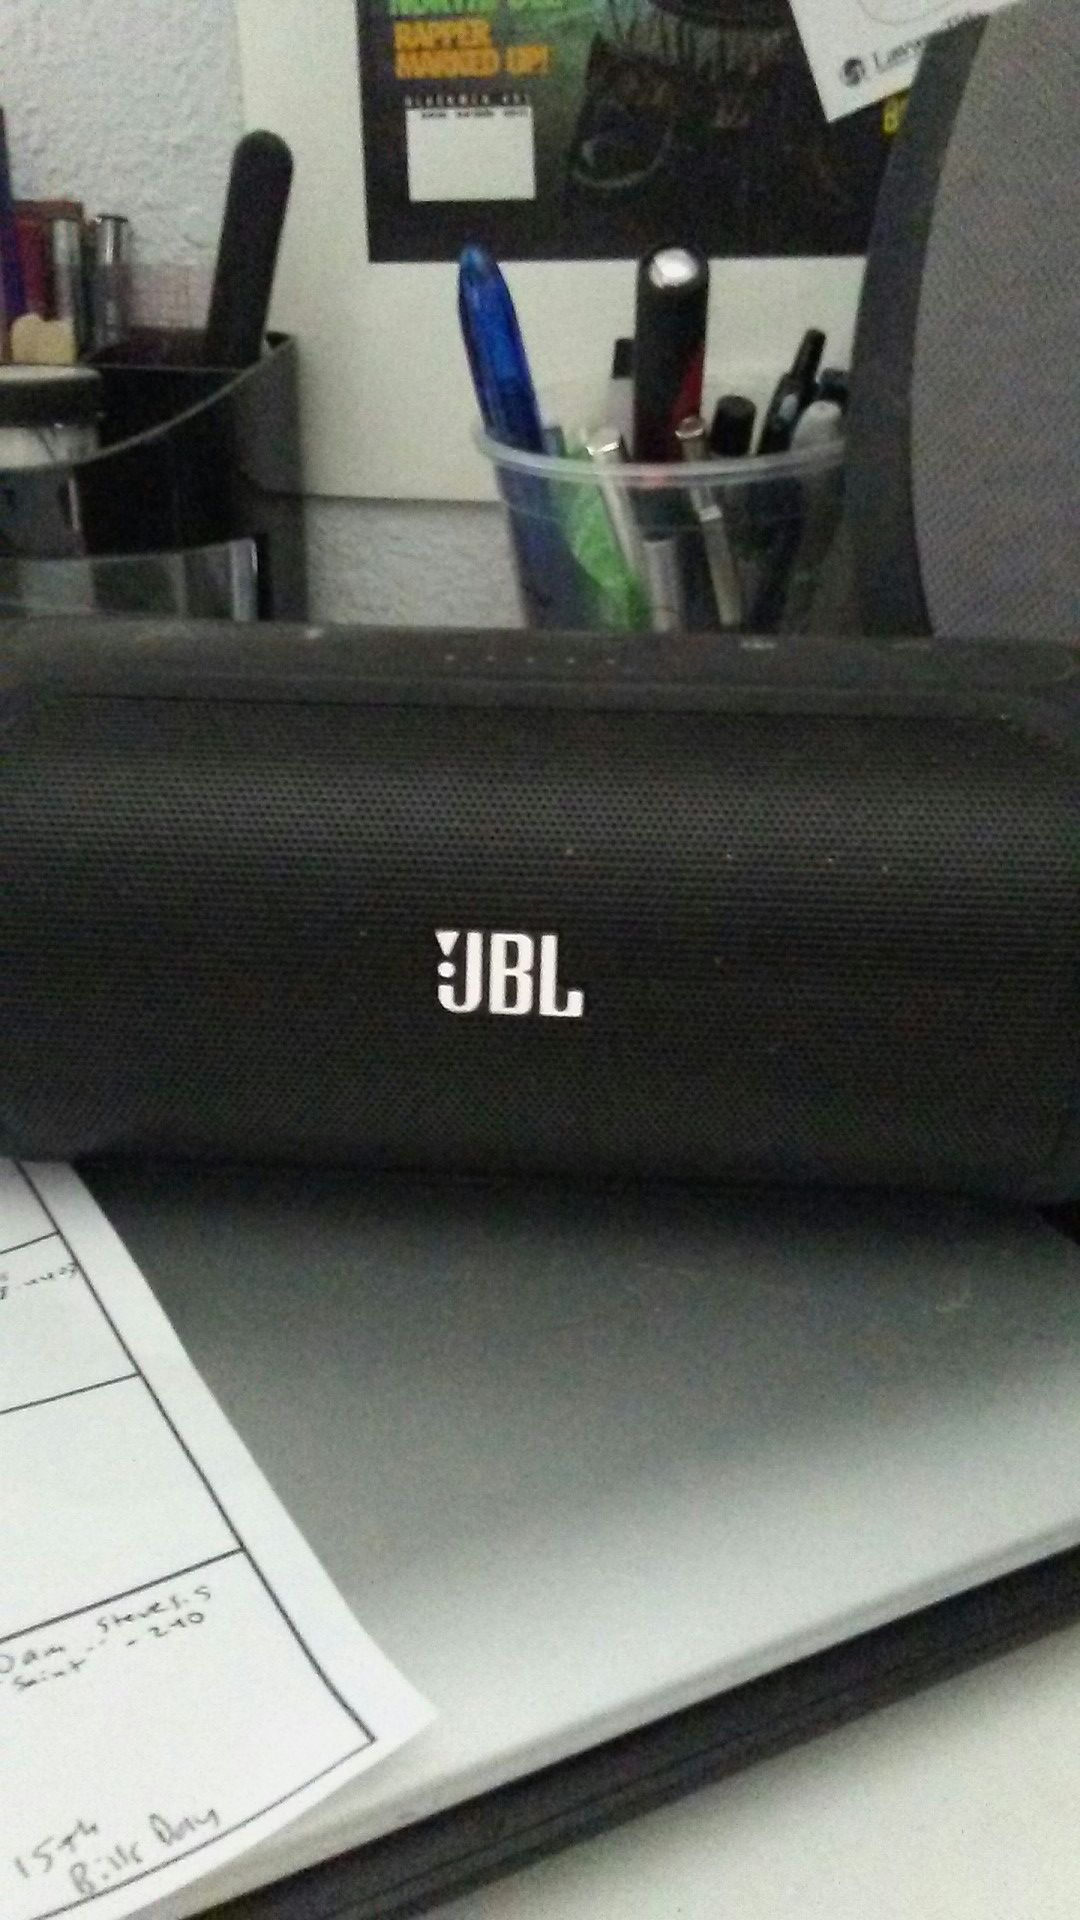 Jbl speaker